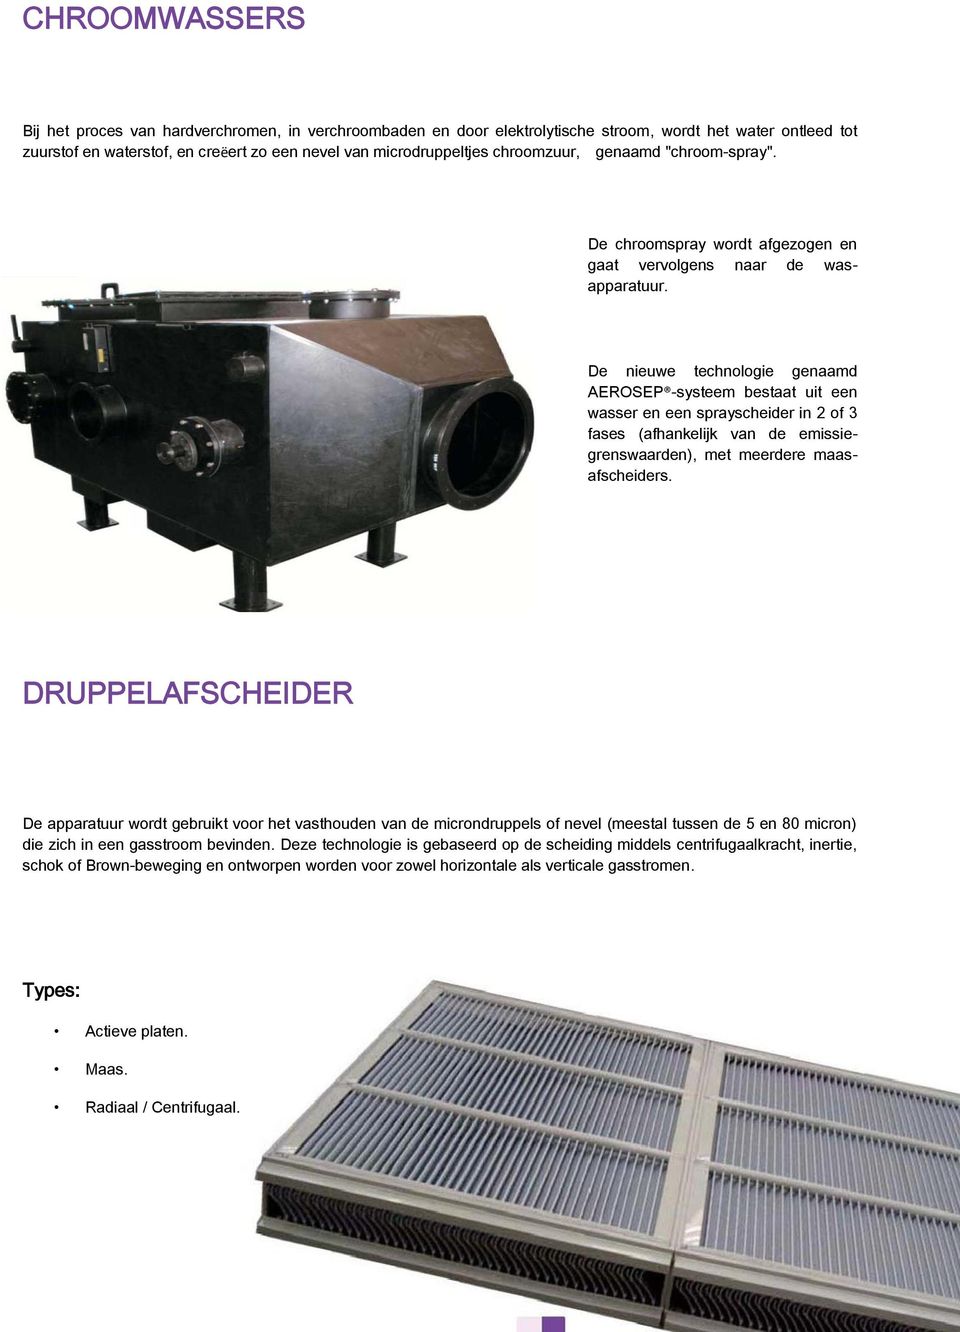 De nieuwe technologie genaamd AEROSEP -systeem bestaat uit een wasser en een sprayscheider in 2 of 3 fases (afhankelijk van de emissiegrenswaarden), met meerdere maasafscheiders.